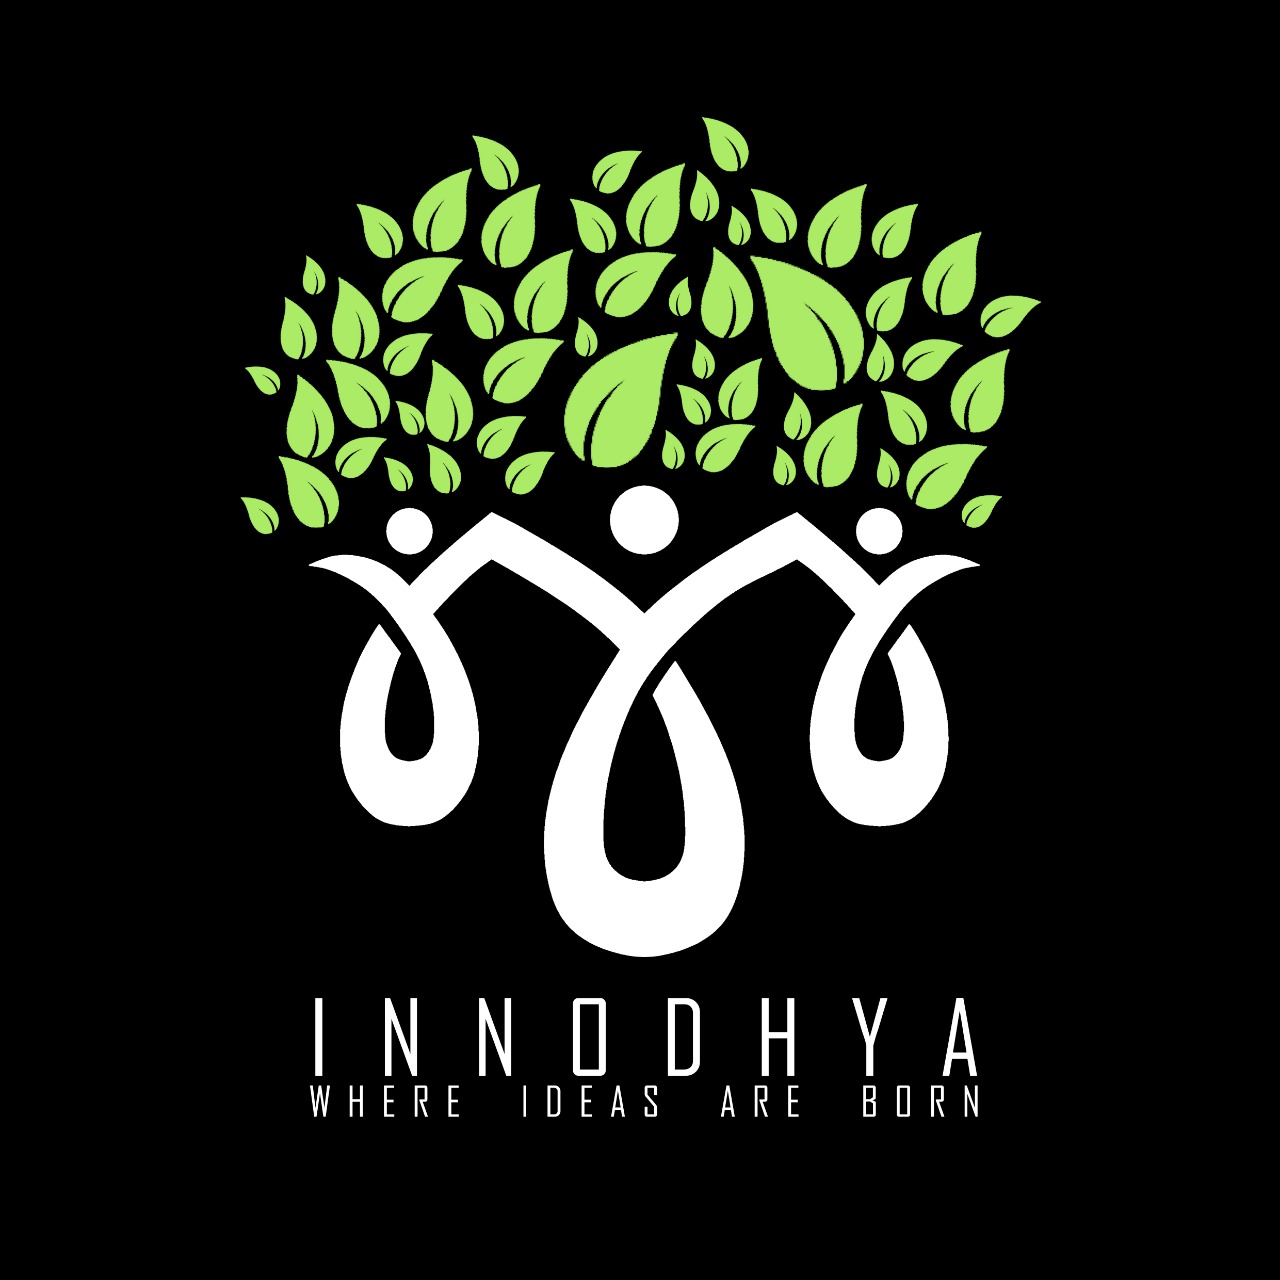 Innodhya 2020